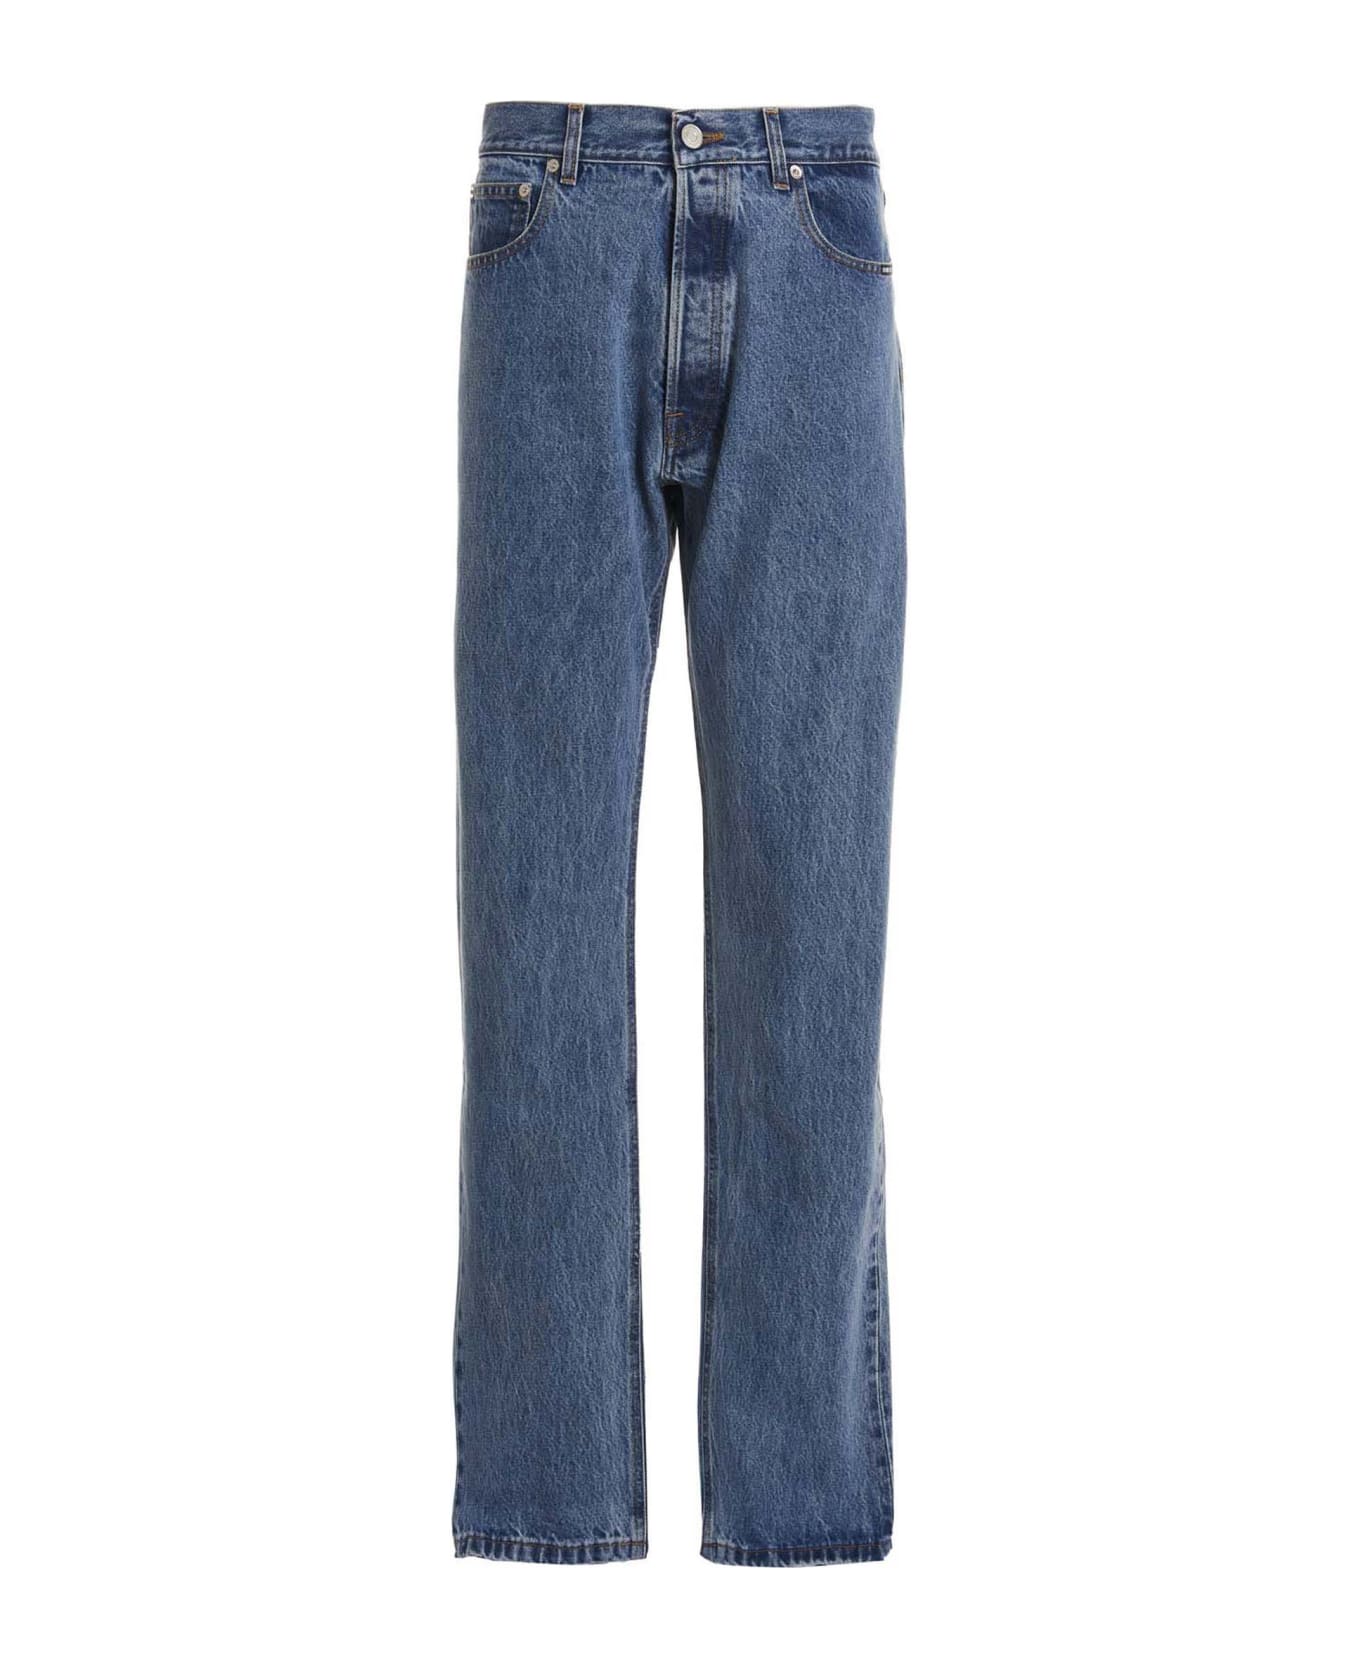 VTMNTS 5-pocket Jeans - DENIM BLUE デニム